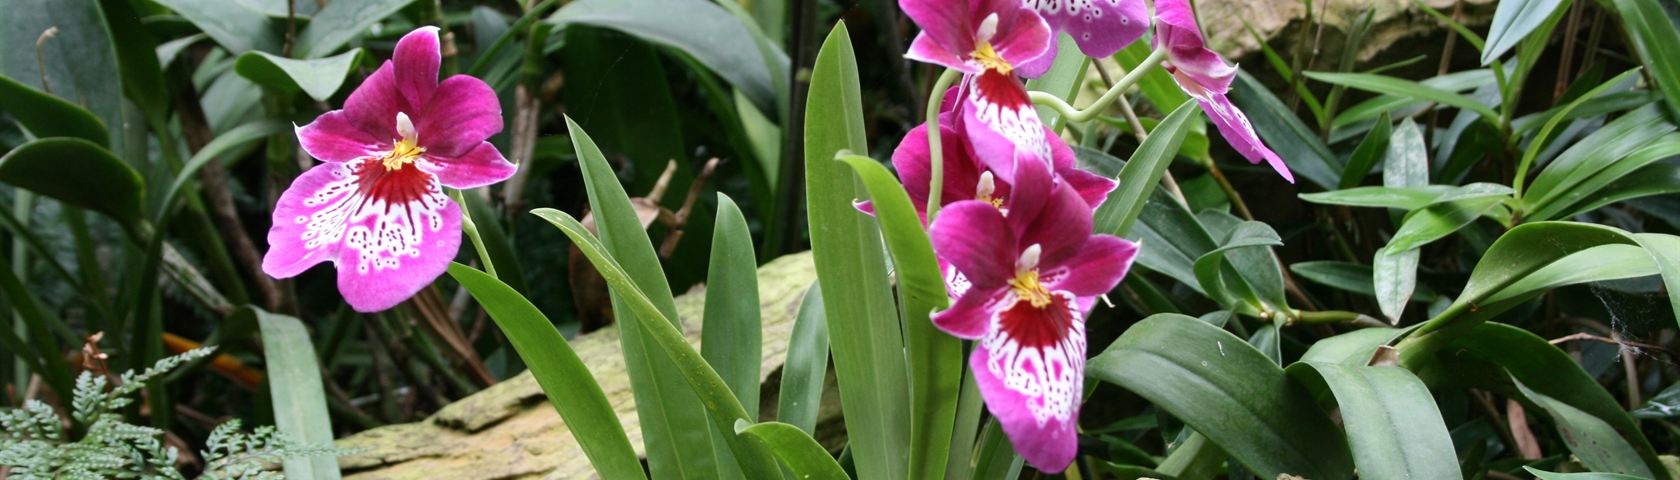 Purple Orkideer